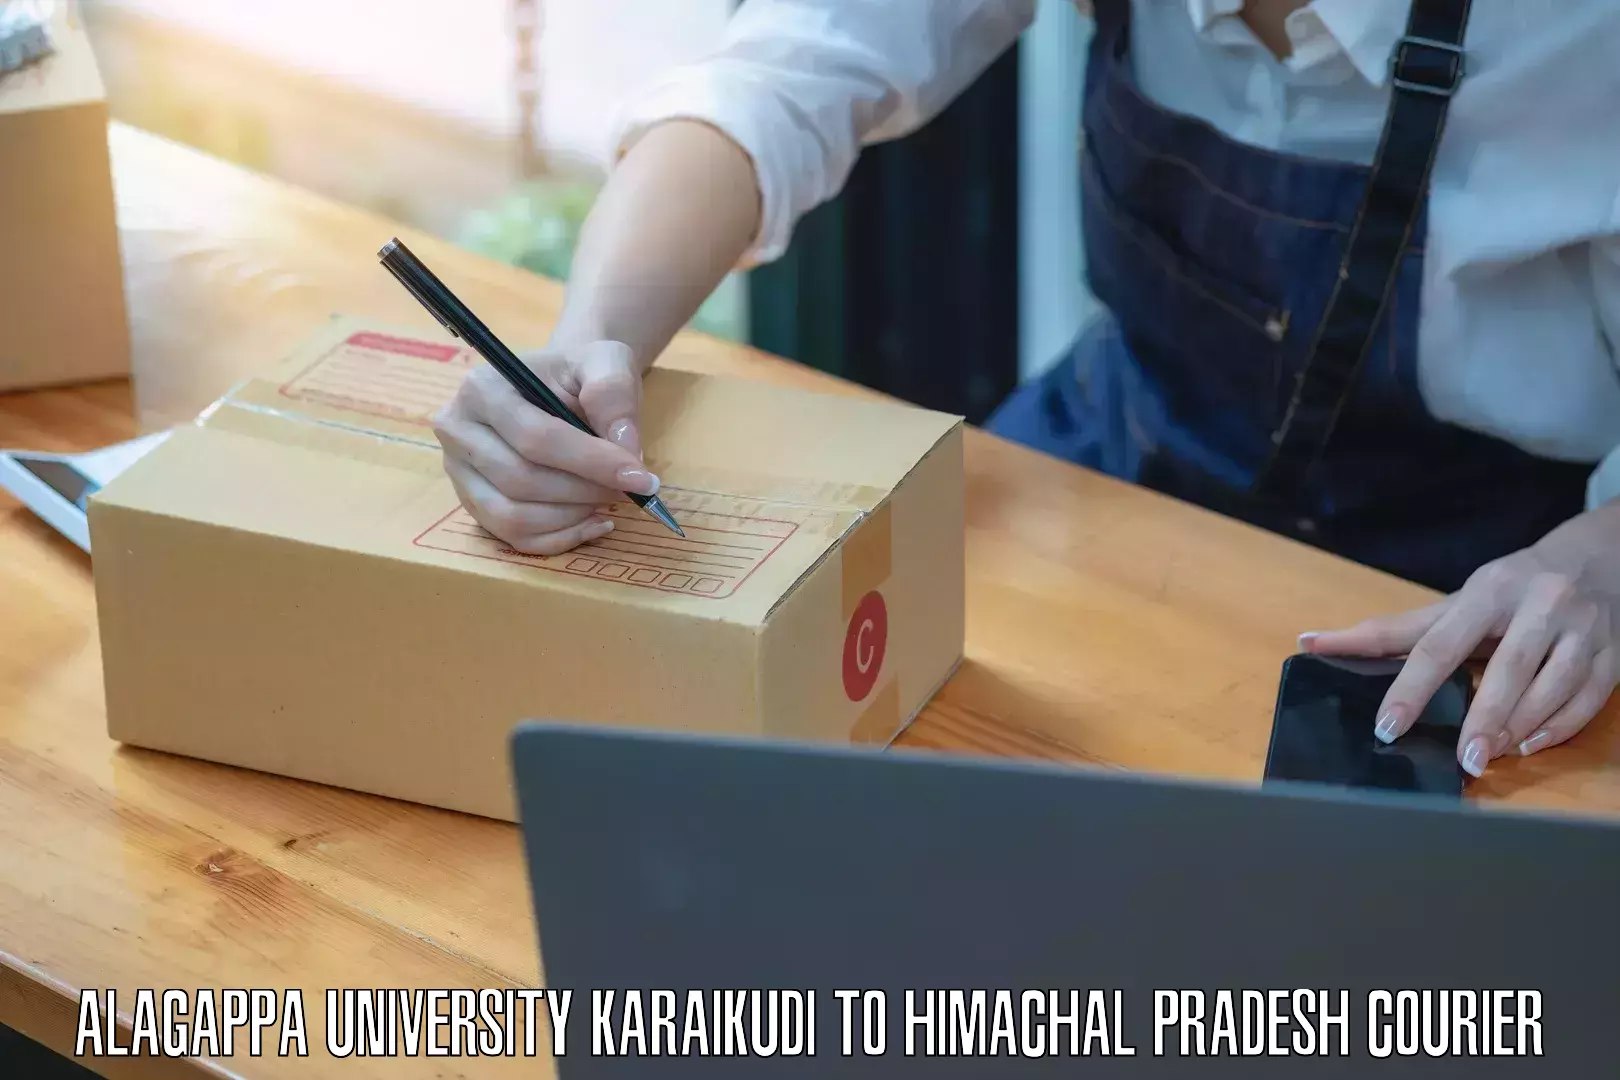 Efficient parcel tracking Alagappa University Karaikudi to Tauni Devi